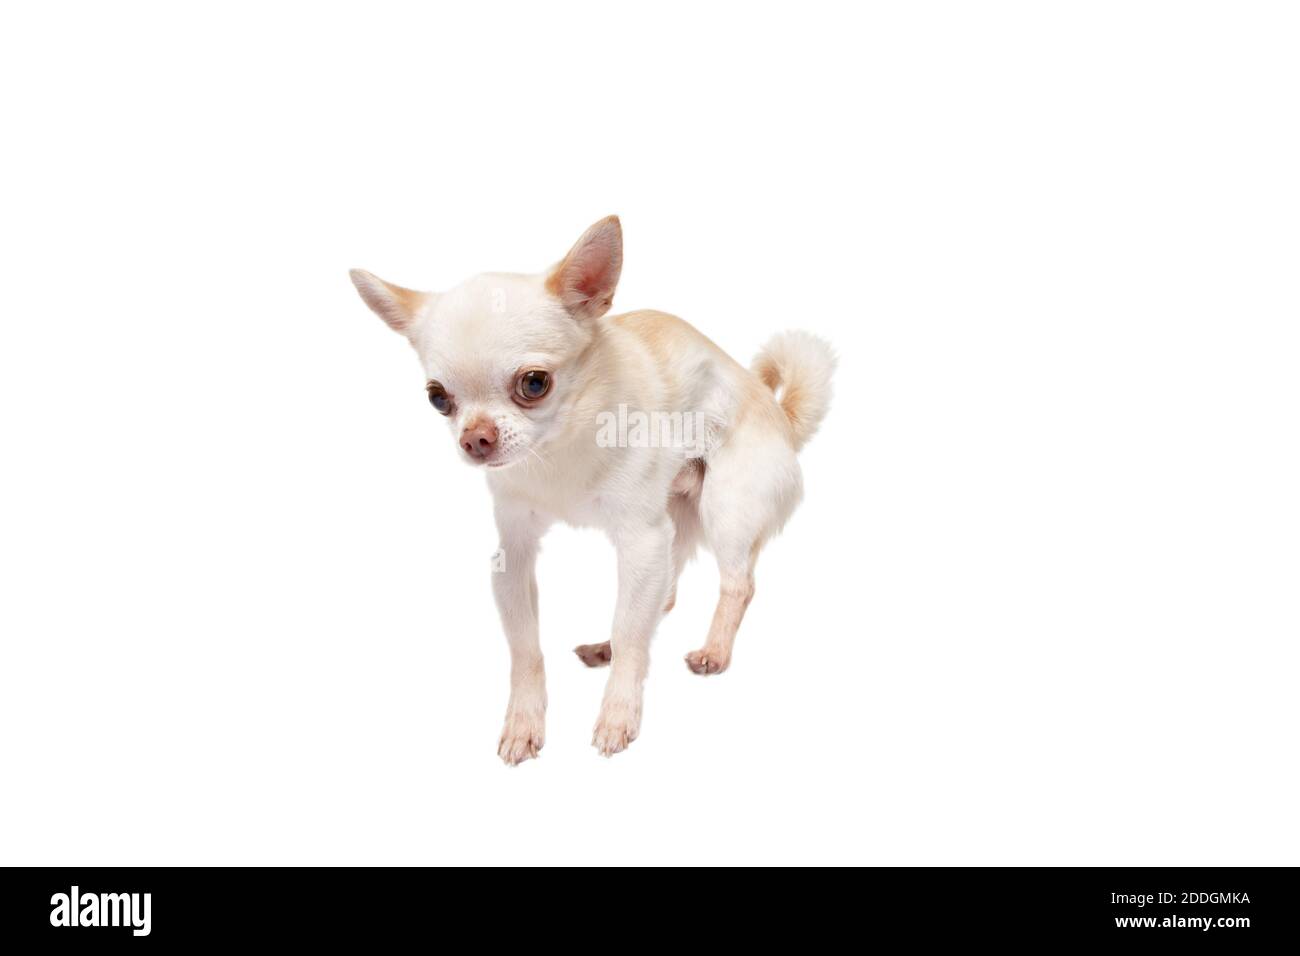 Chihuahua compagno cane salto. Carino giocoso doggy bianco crema o animale domestico che gioca isolato su sfondo bianco studio. Concetto di movimento, azione, movimento, amore animali domestici. Sembra felice, felice, divertente. Foto Stock